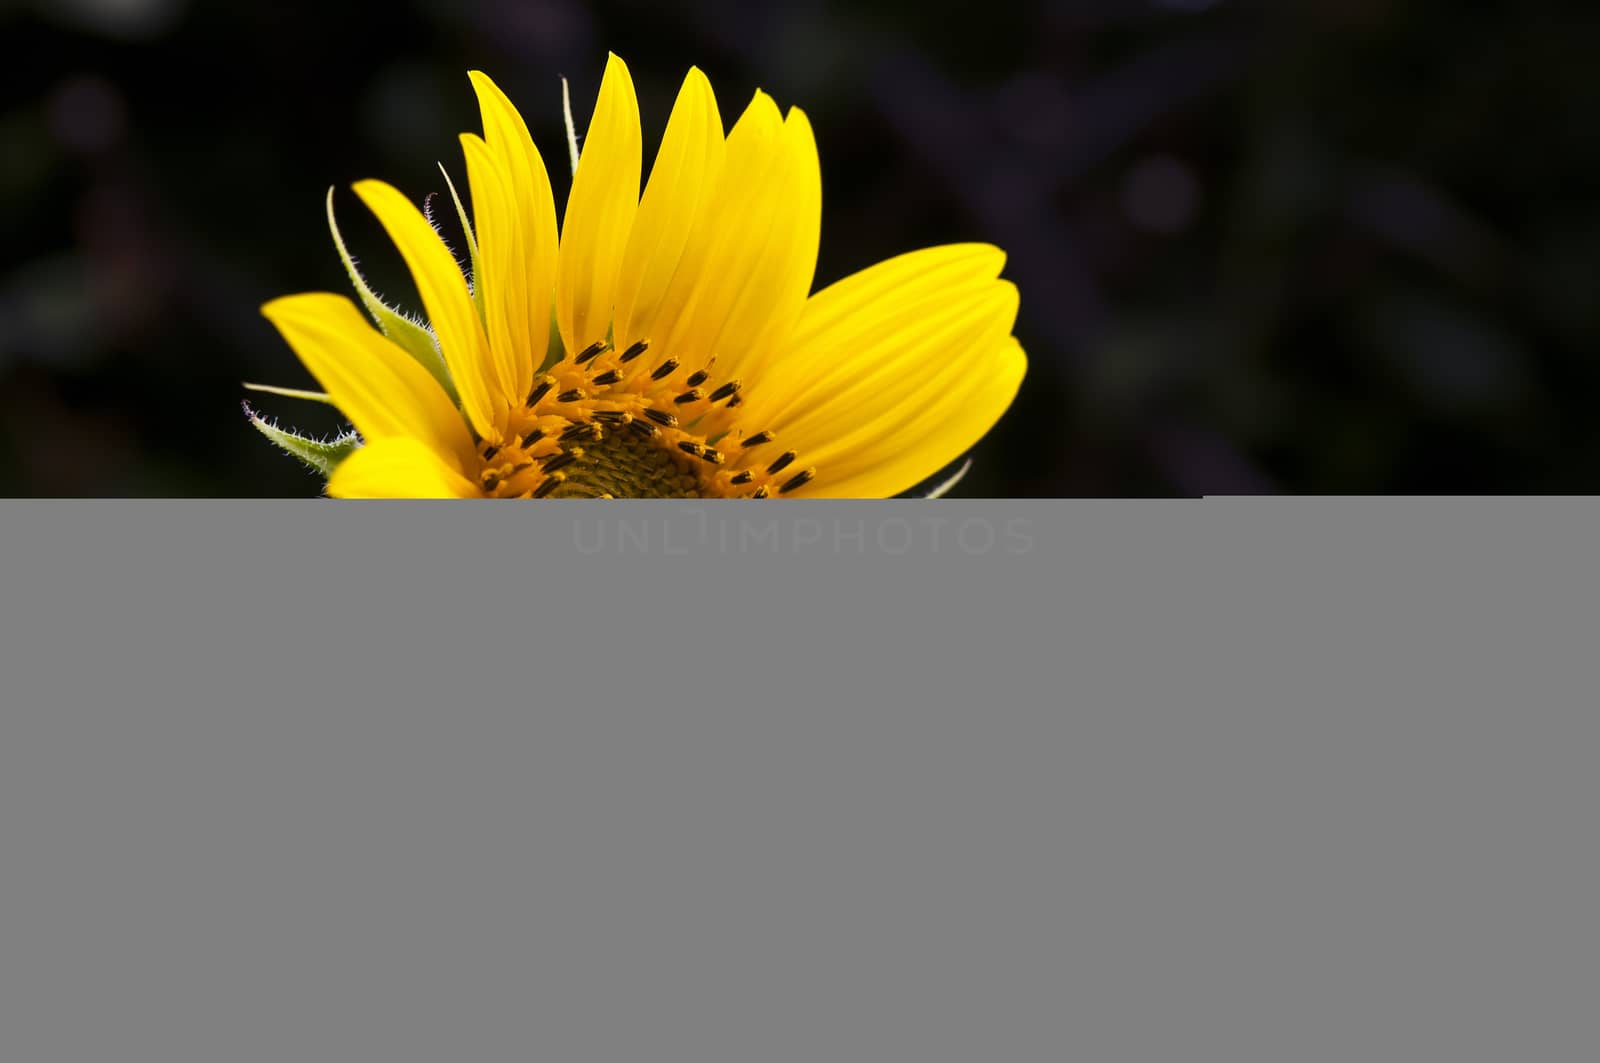 single sunflower against a dark background